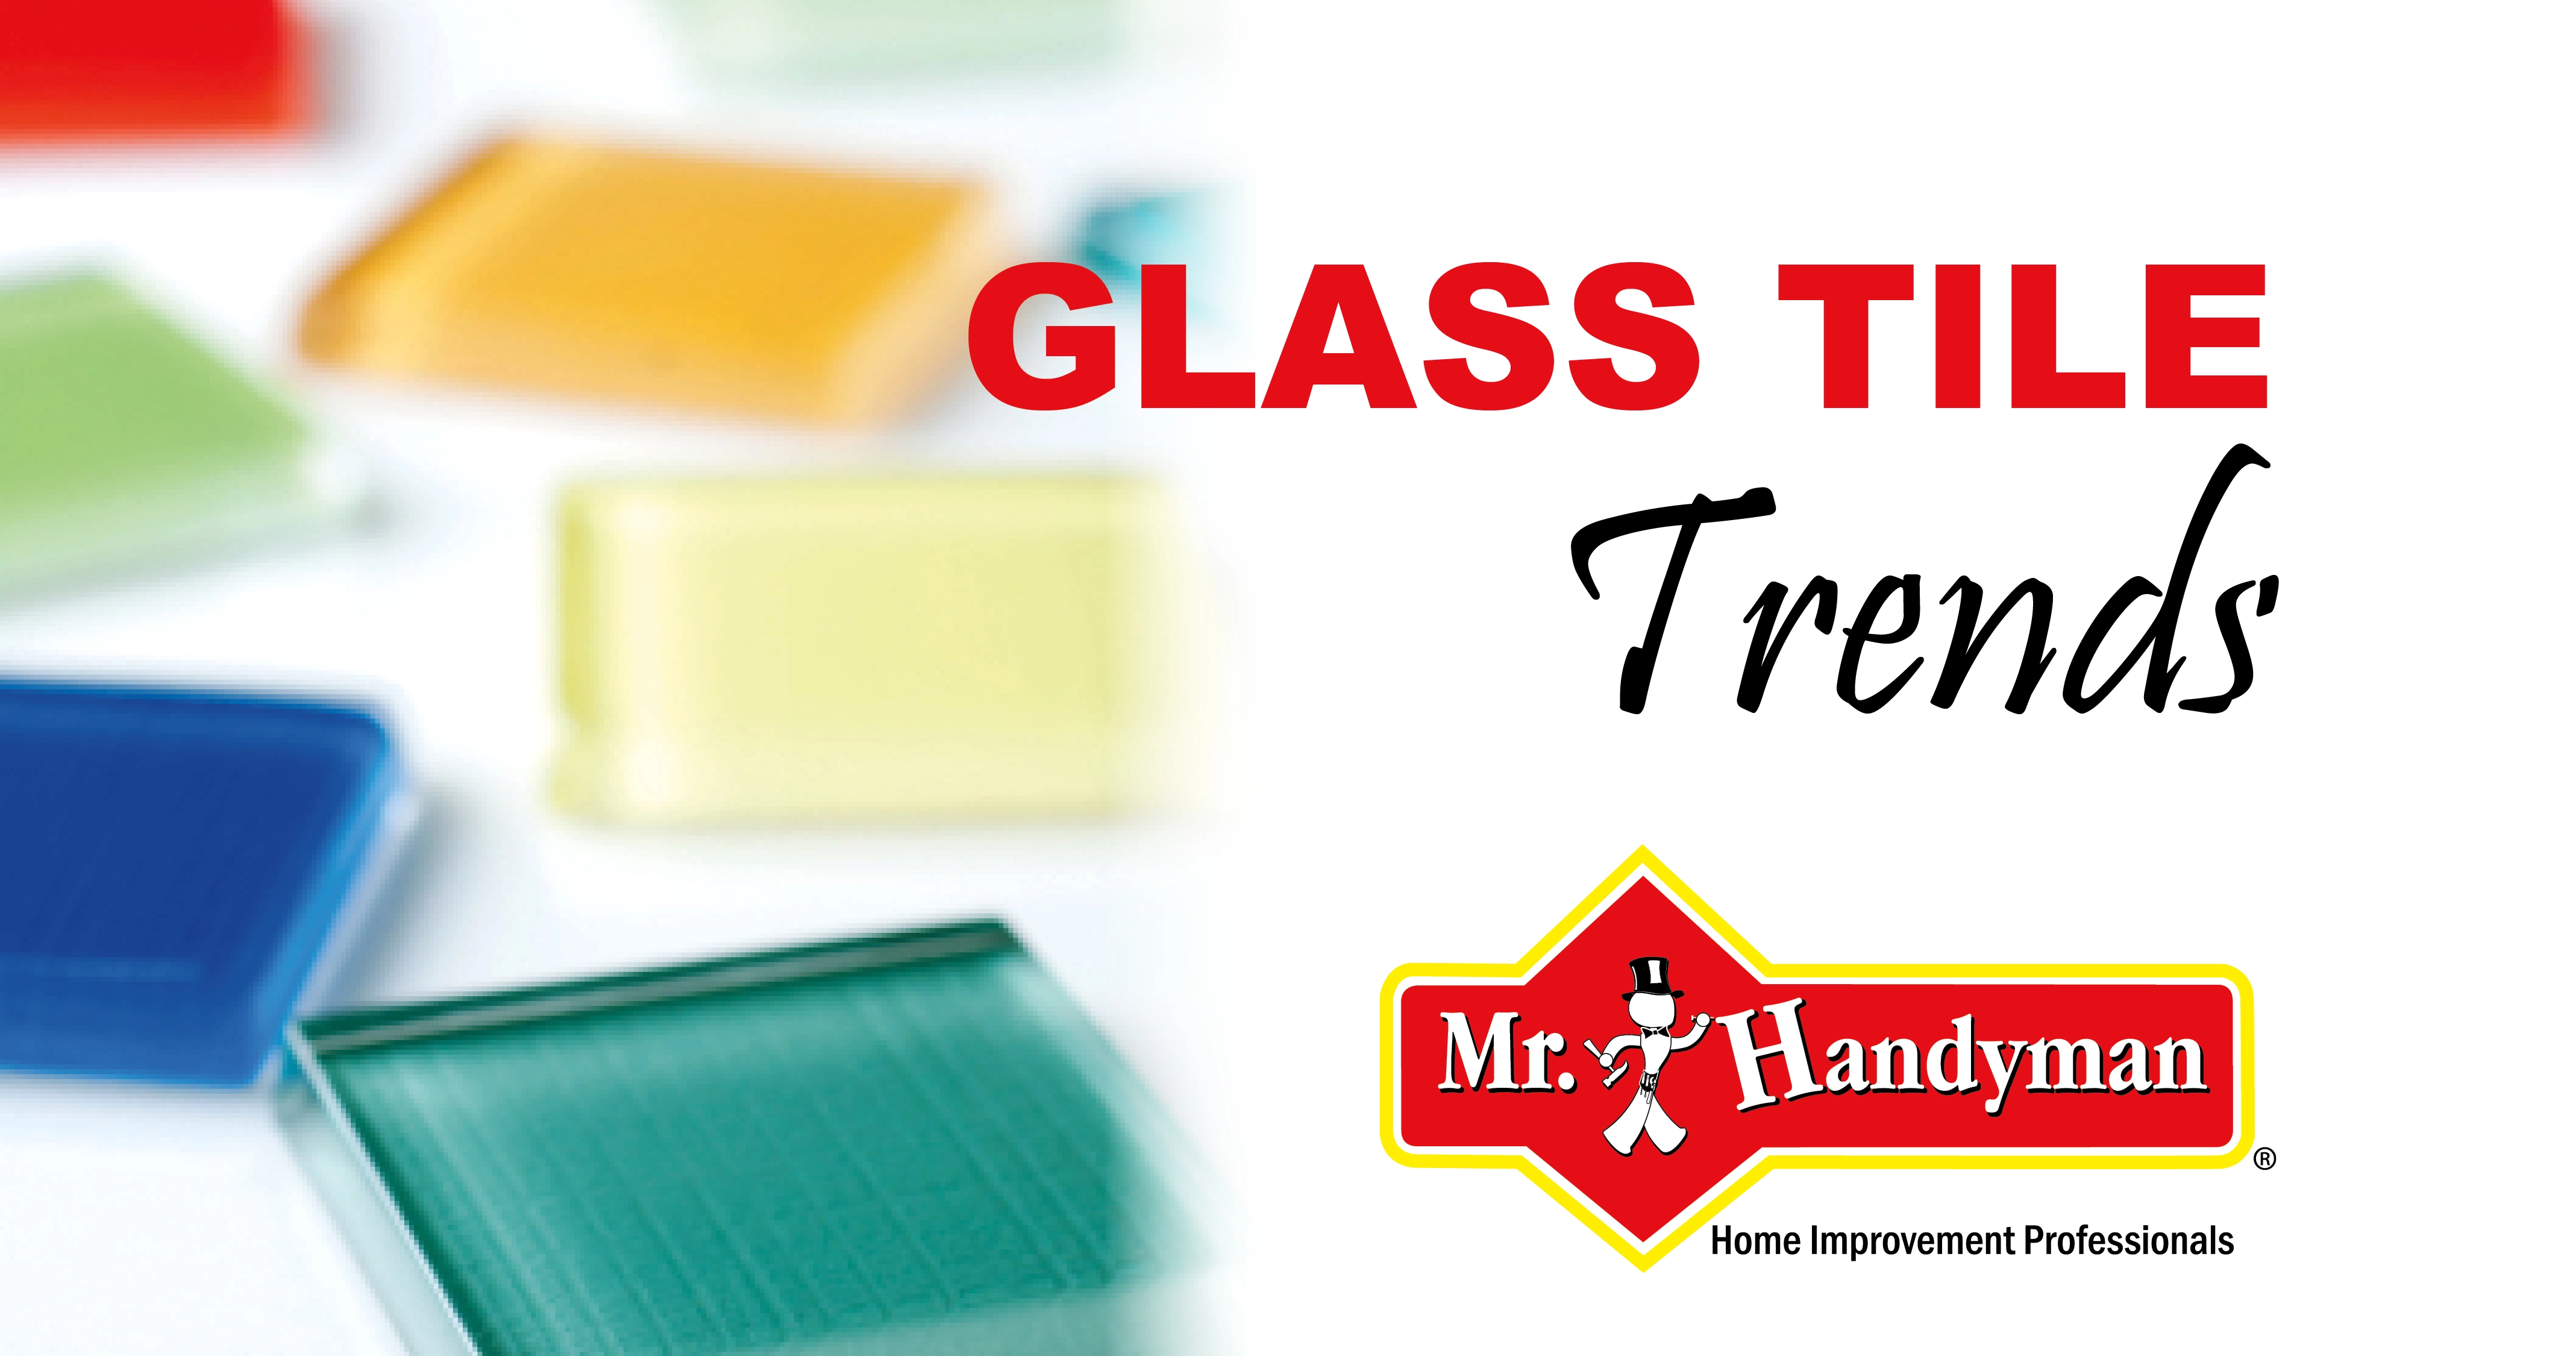 https://www.mrhandyman.com/us/en-us/mr-handyman/_assets/expert-tips/images/mrh-blog-glass-tile-the-pros-cons.webp